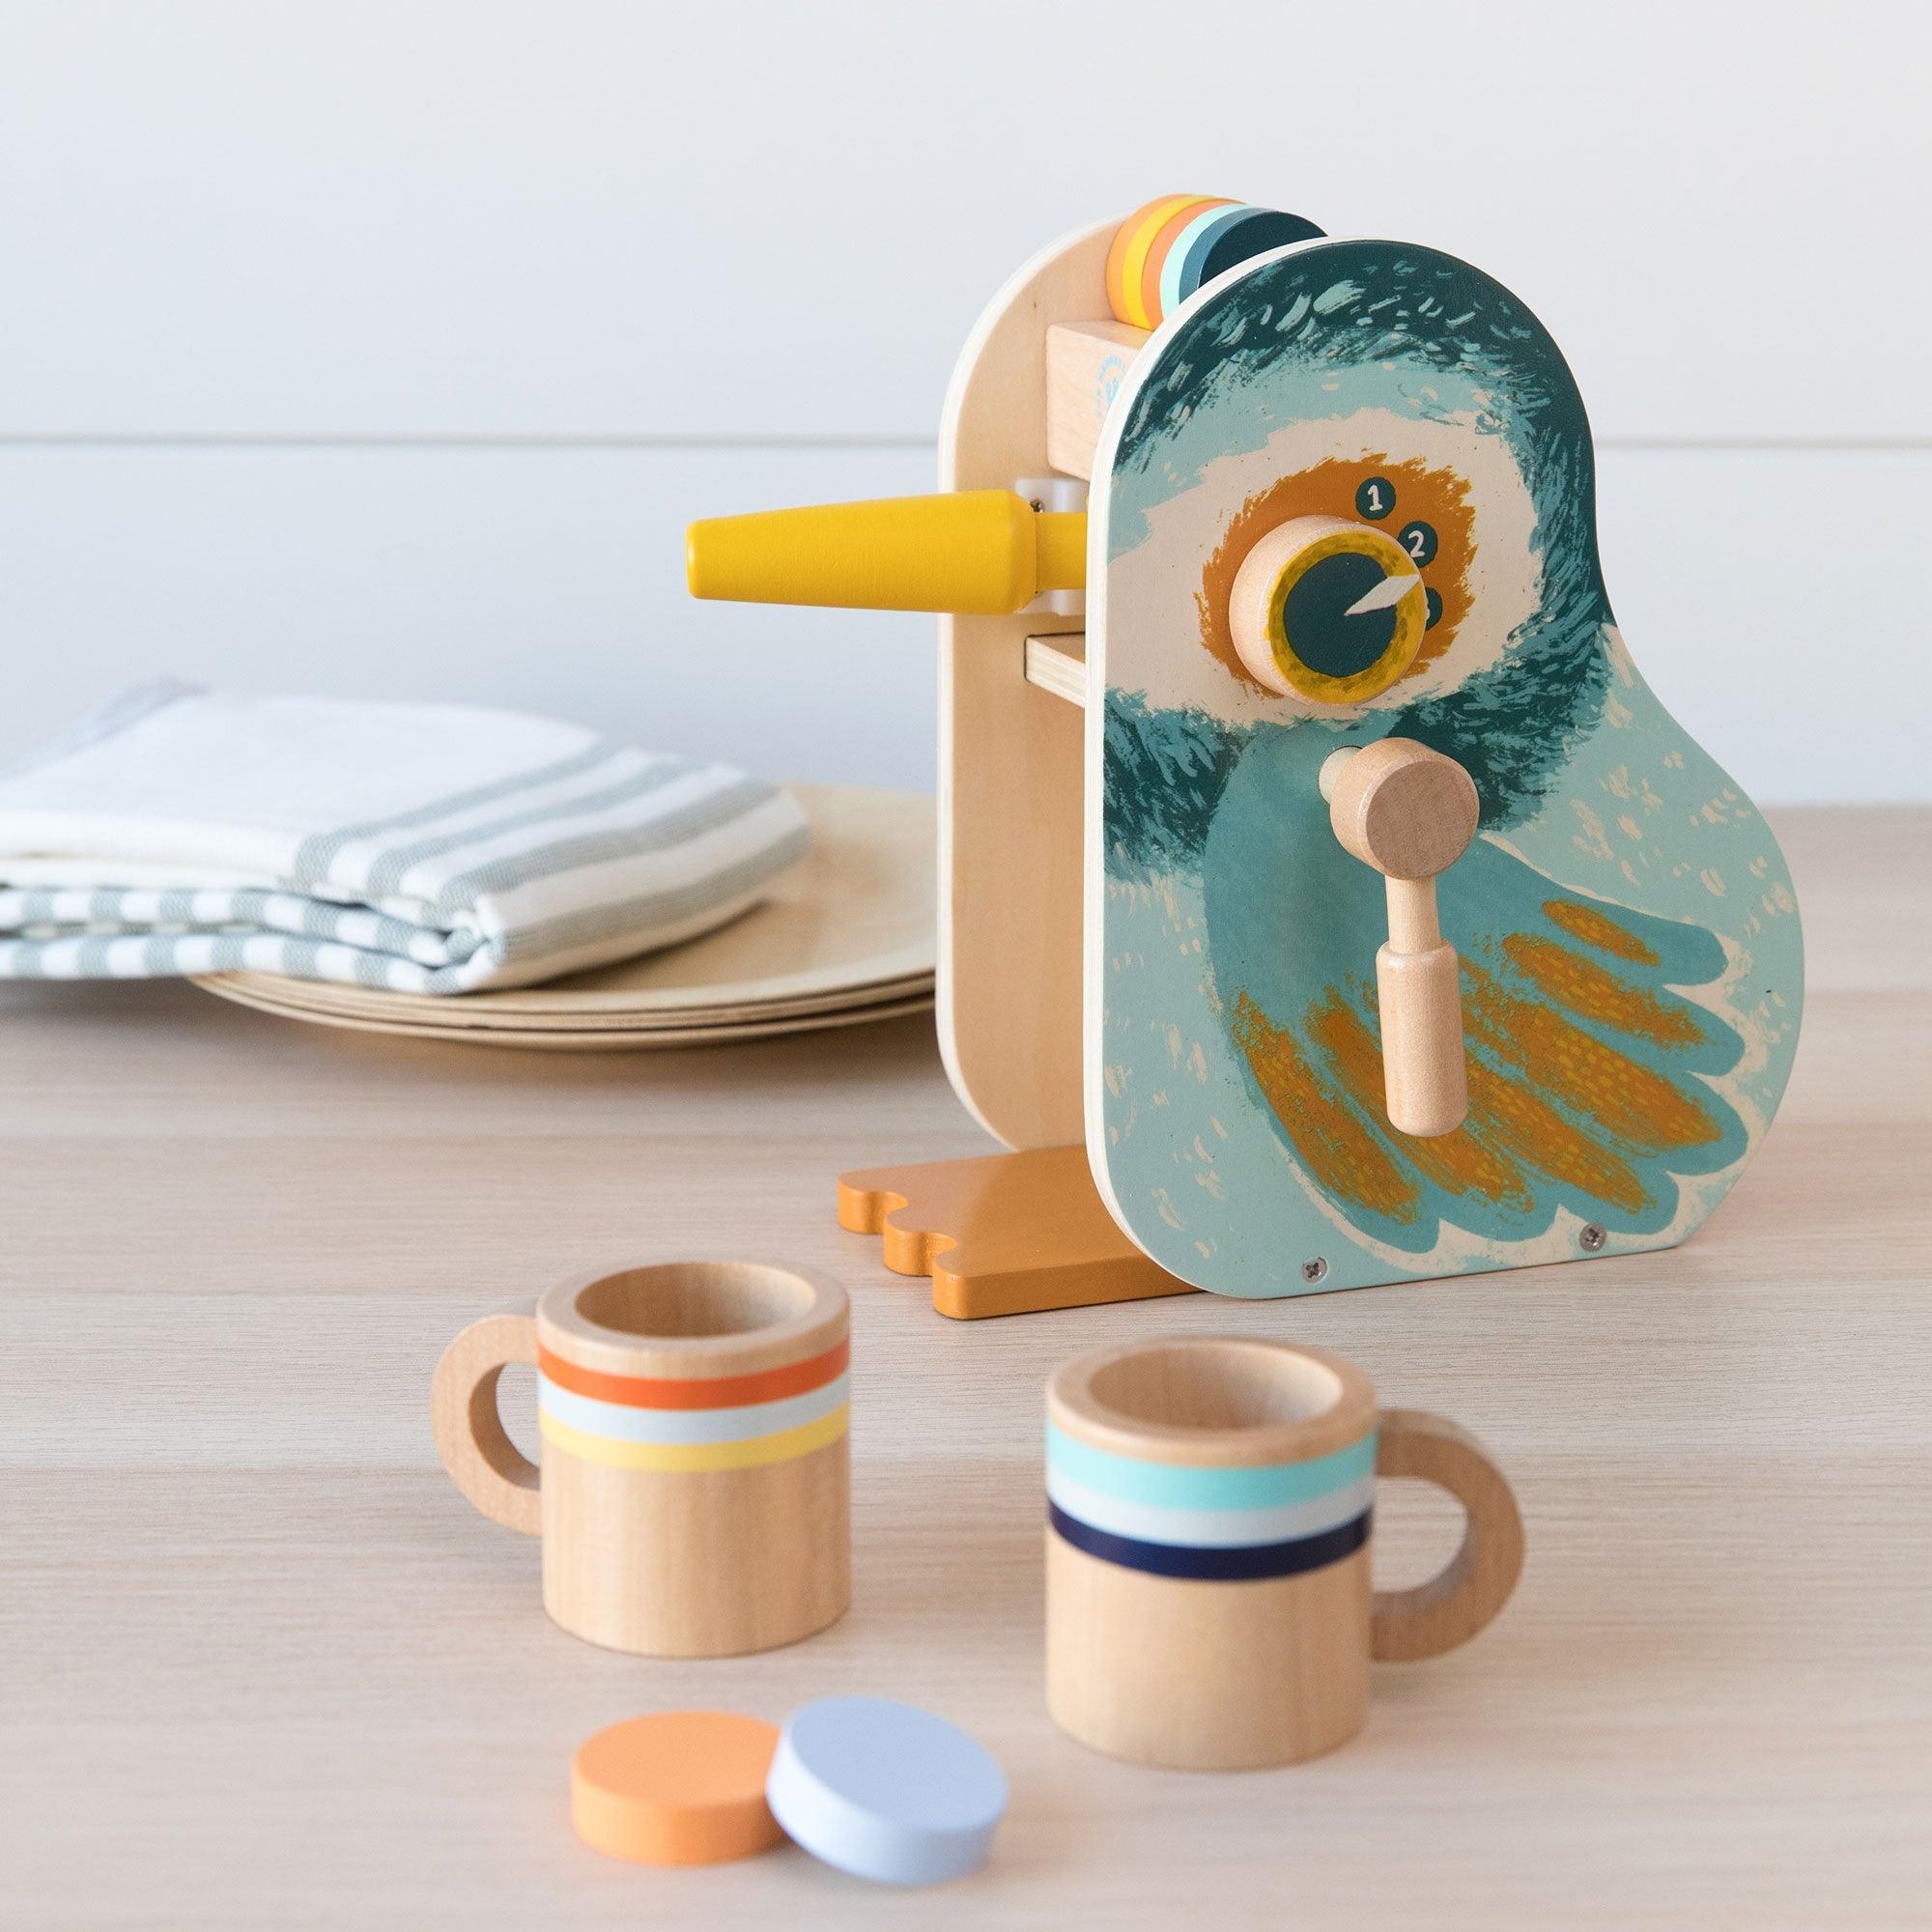 Manhattan Toy: drewniany ekspres do kawy Early Birds - Noski Noski